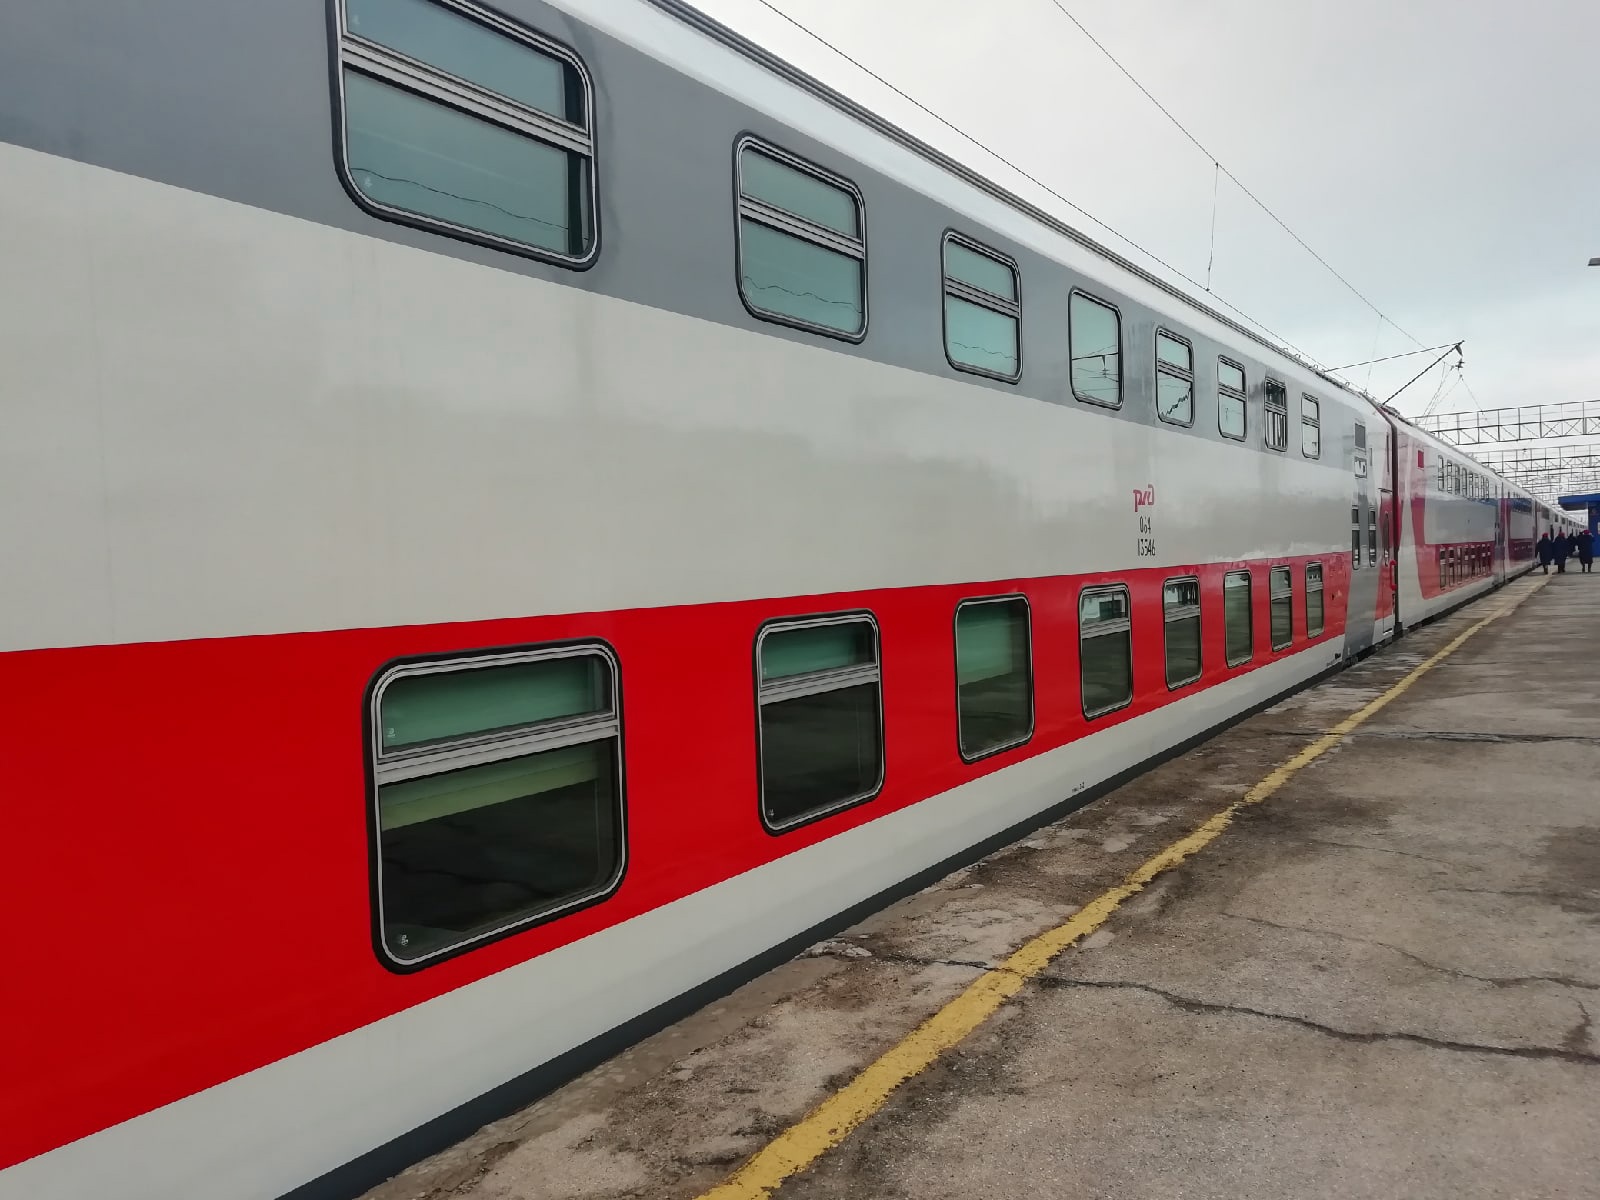 Поезд тольятти москва двухэтажный